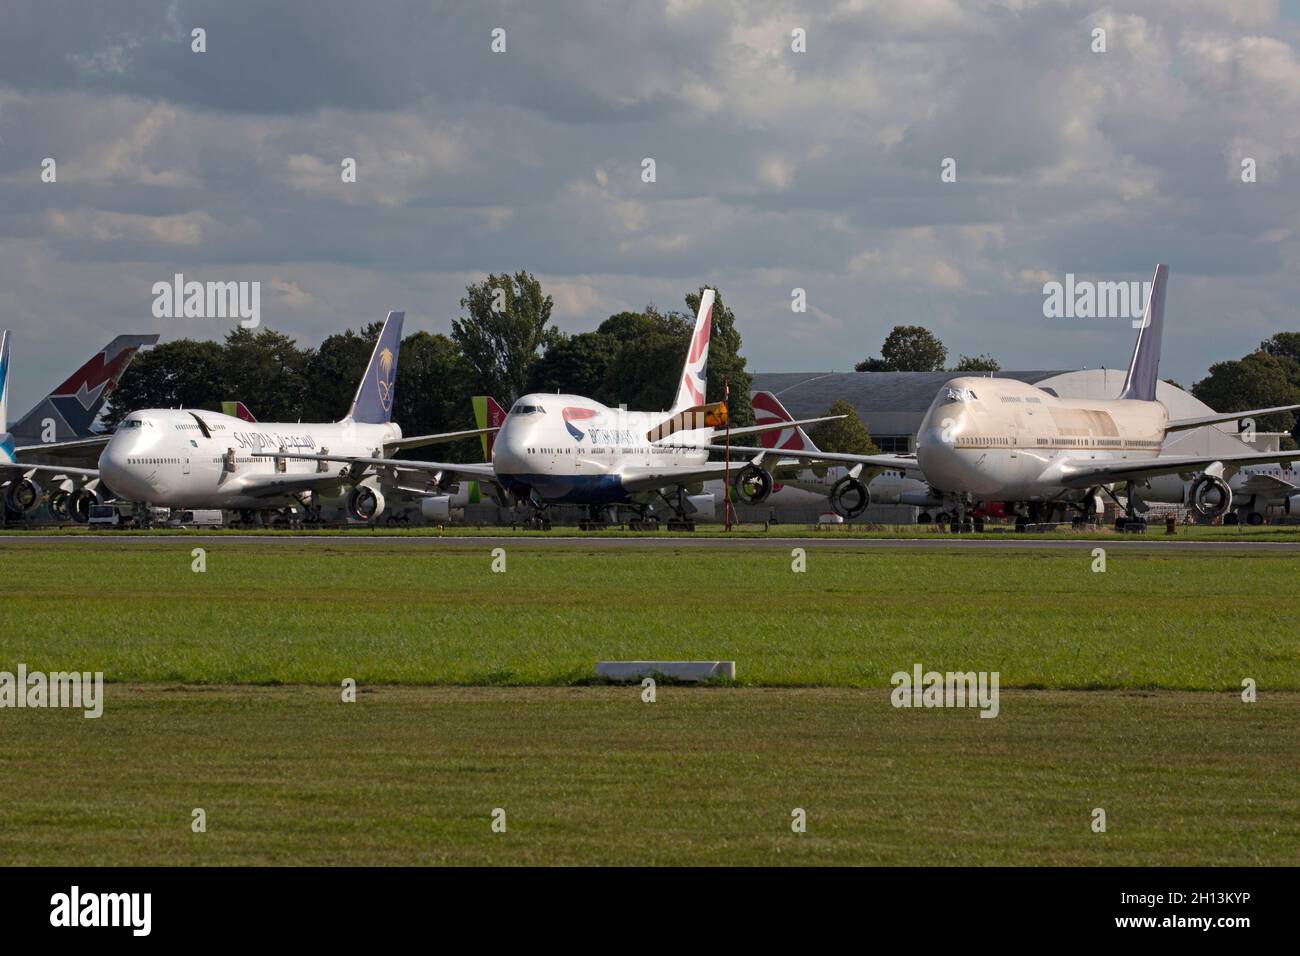 Una fila de aviones Boeing 747 en el aeropuerto de Cotswold en Inglaterra, esperando ser desguazados. Foto de stock